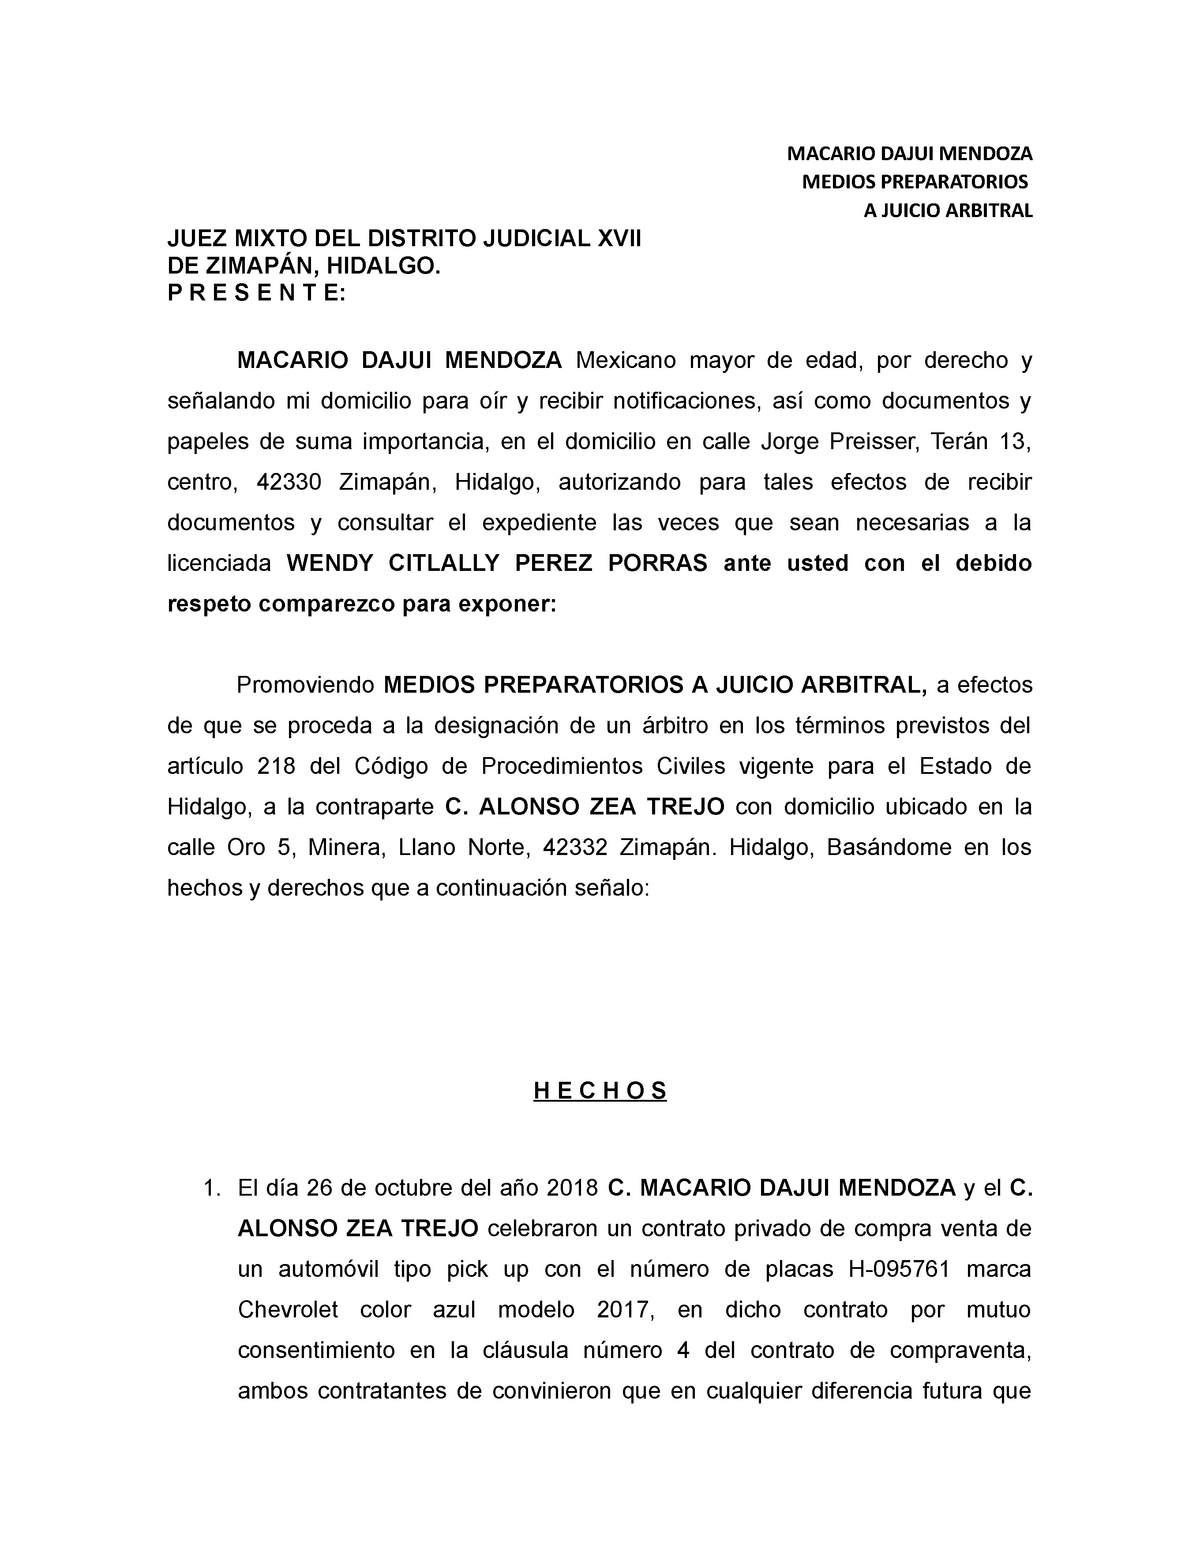 Escrito medios preparatorios juicio arbitral - MACARIO DAJUI MENDOZA MEDIOS  PREPARATORIOS A JUICIO - Studocu